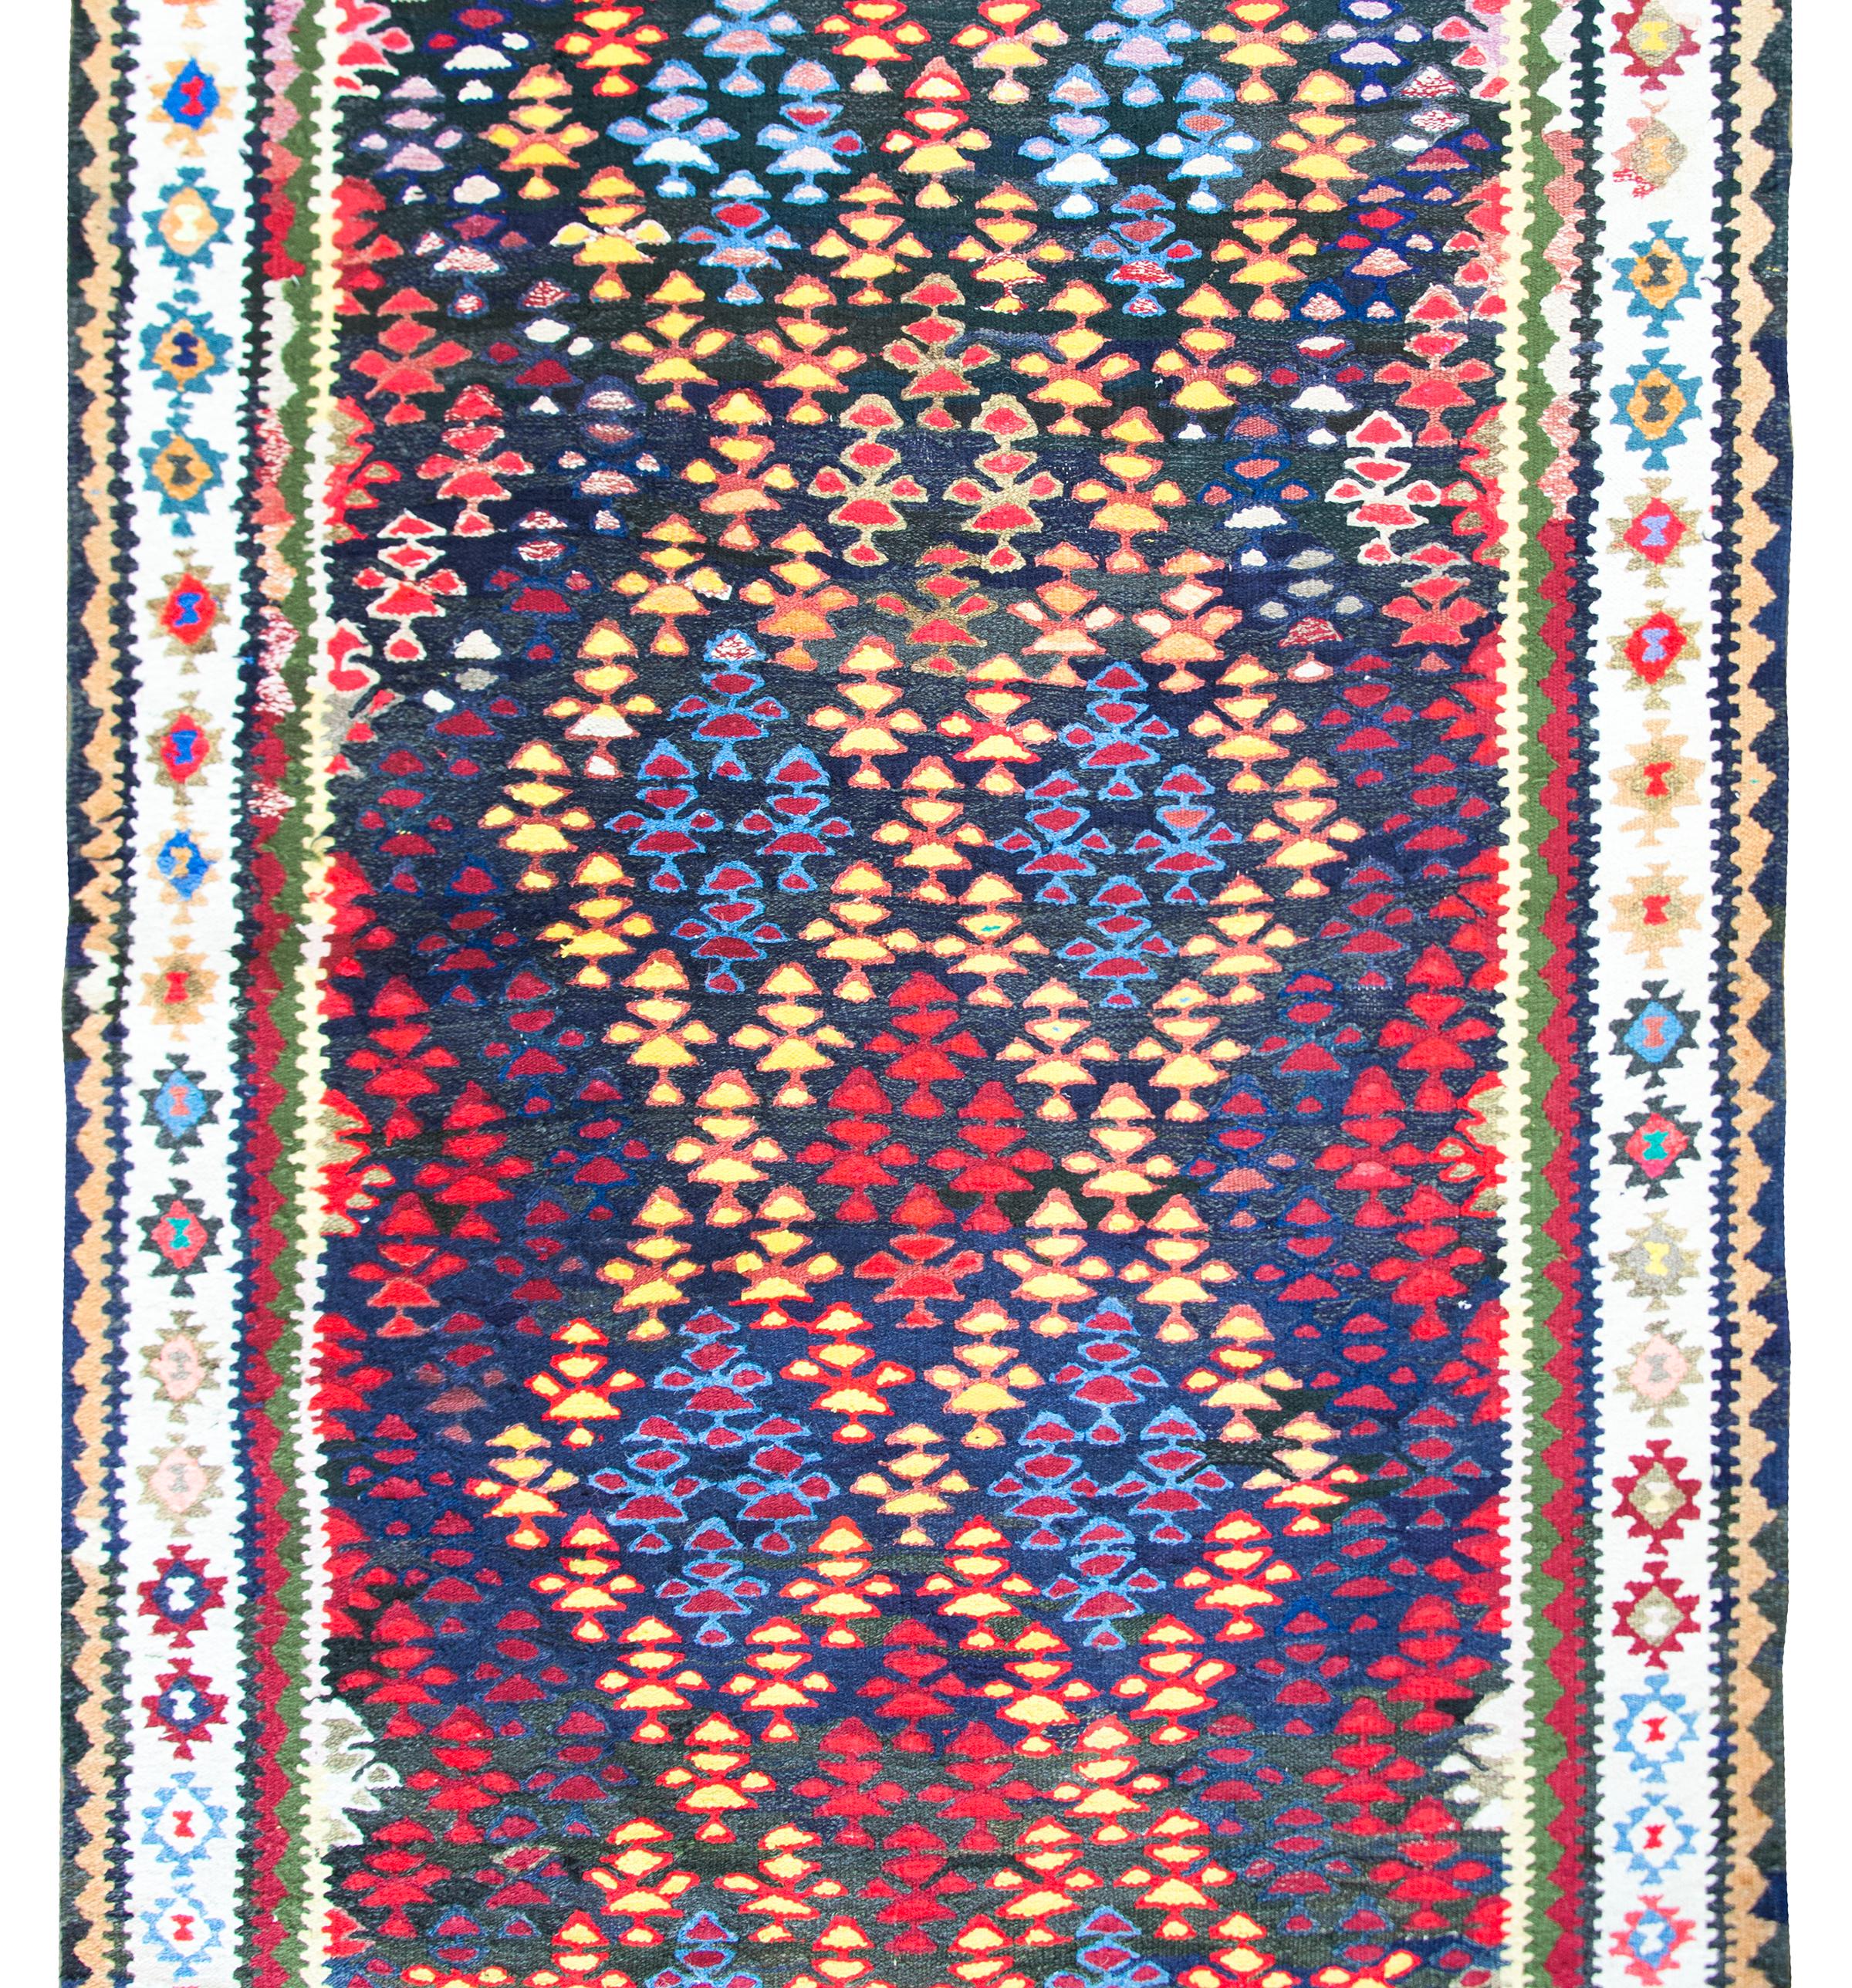 Magnifique tapis kilim persan vintage avec des arbres de vie multicolores tissés dans un motif de bandes entrecroisées créant des losanges et un motif de treillis, entouré d'une bordure complexe de fleurs plus stylisées et de motifs géométriques, le